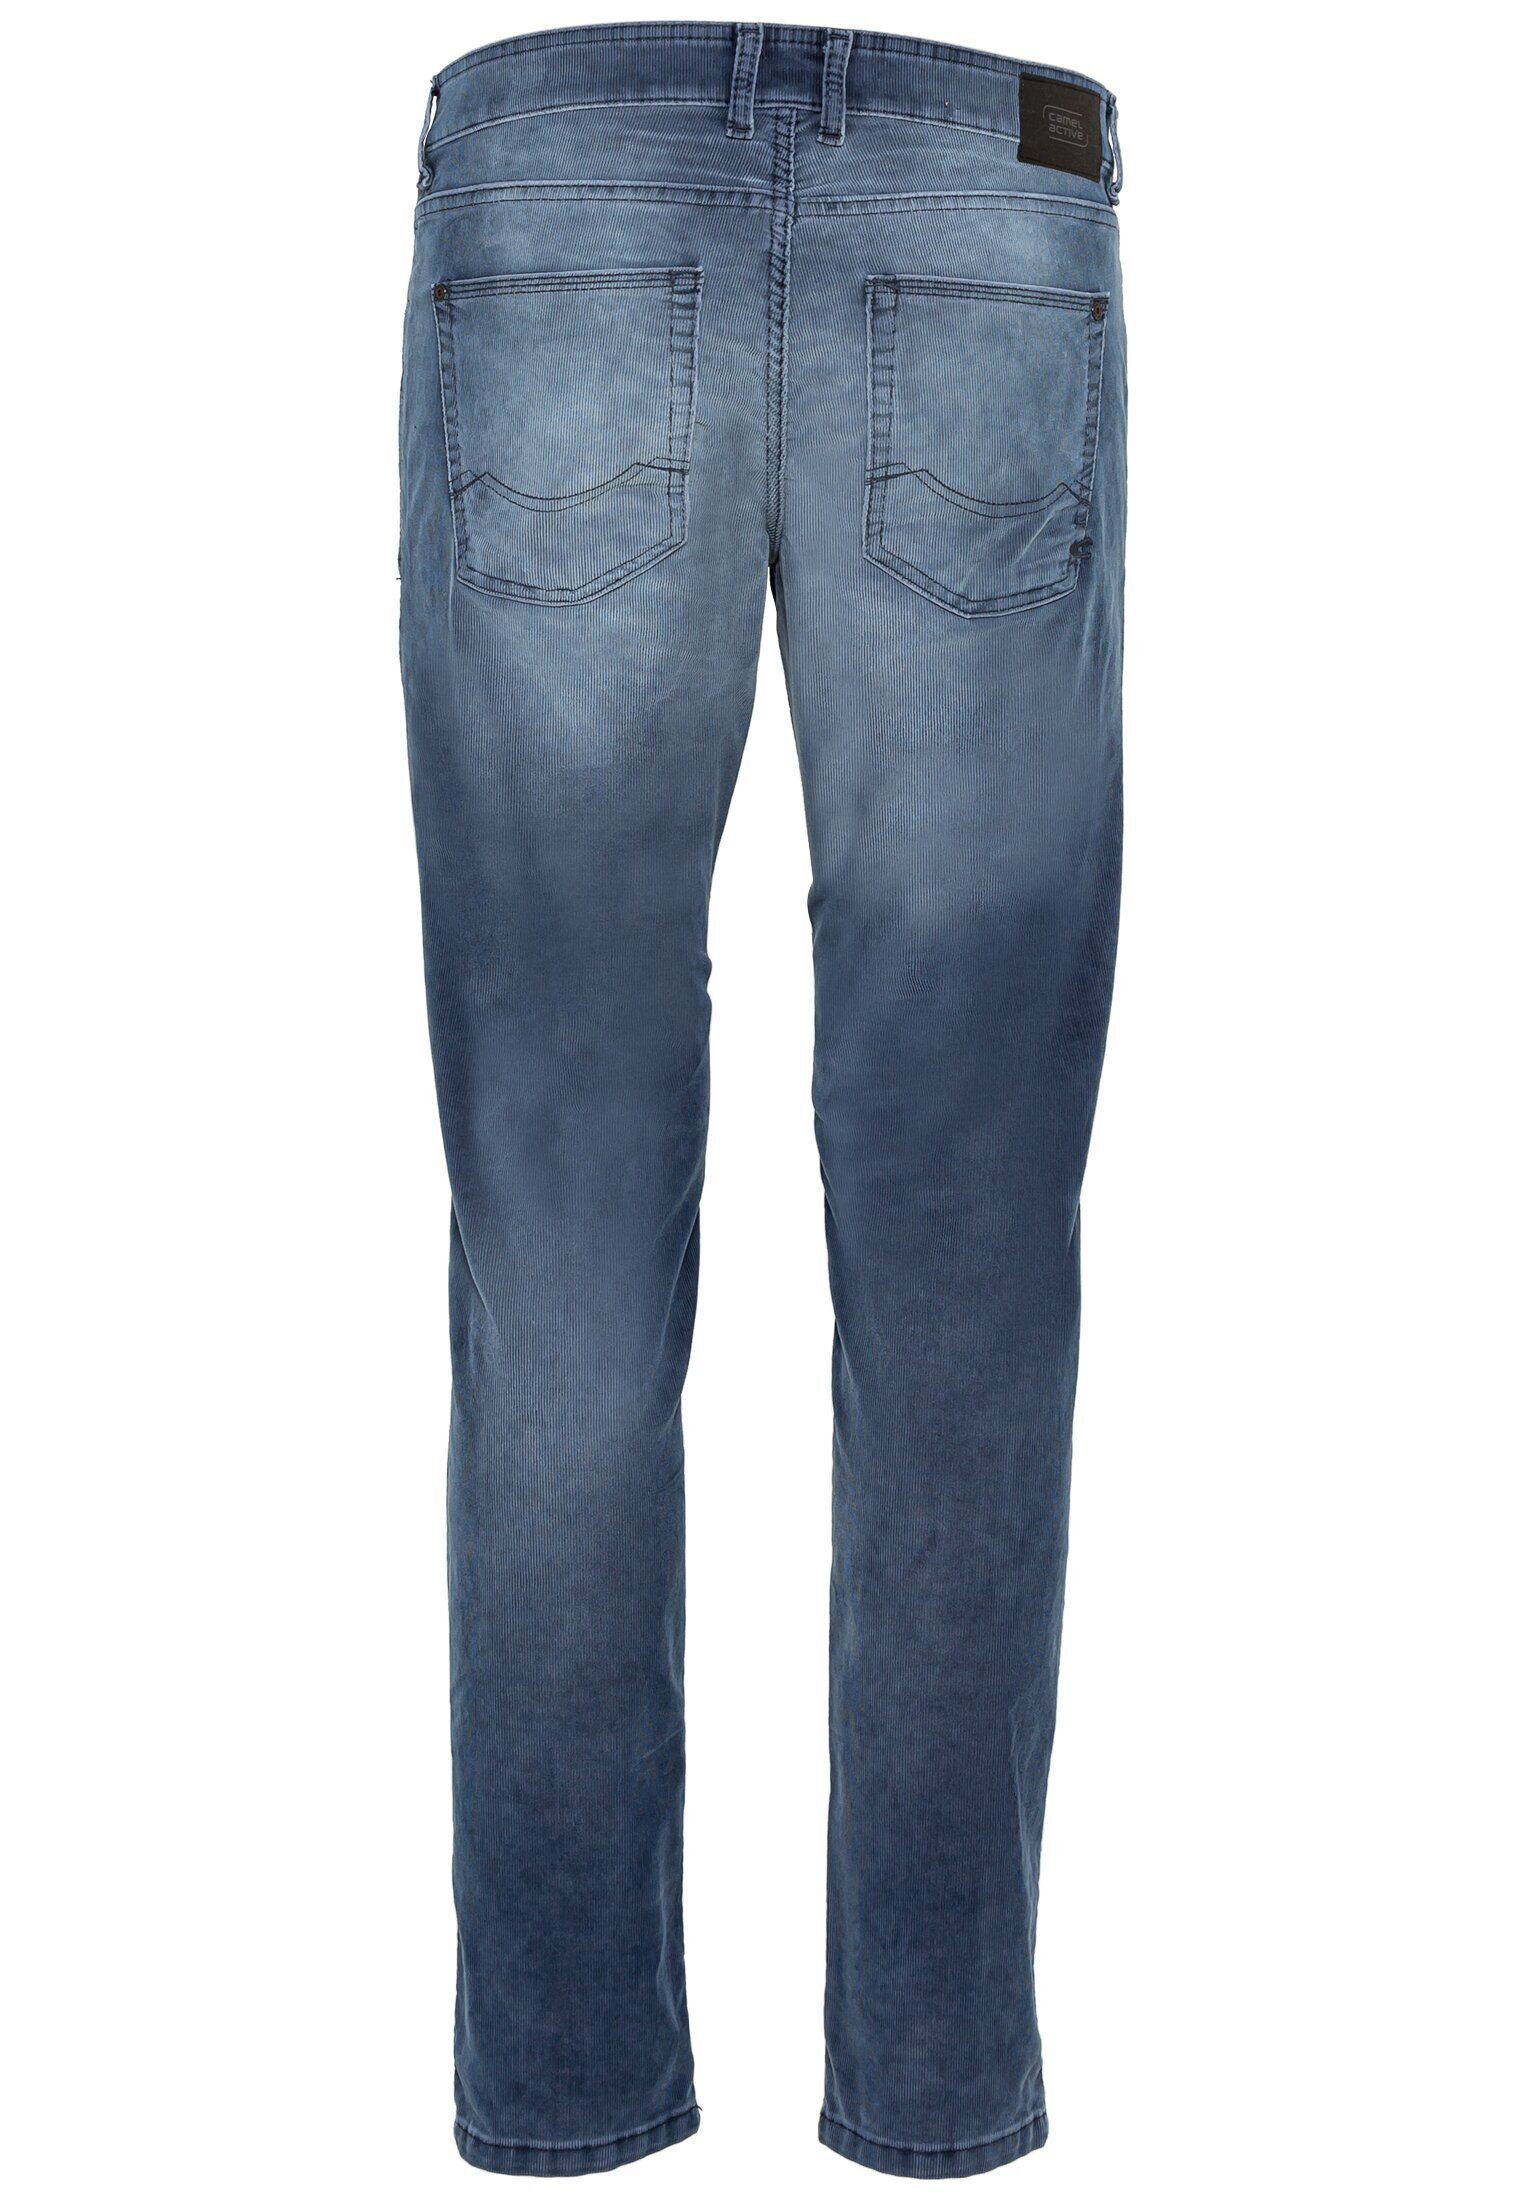 camel active 5-Pocket-Jeans Slim Cordhose Fit Blau